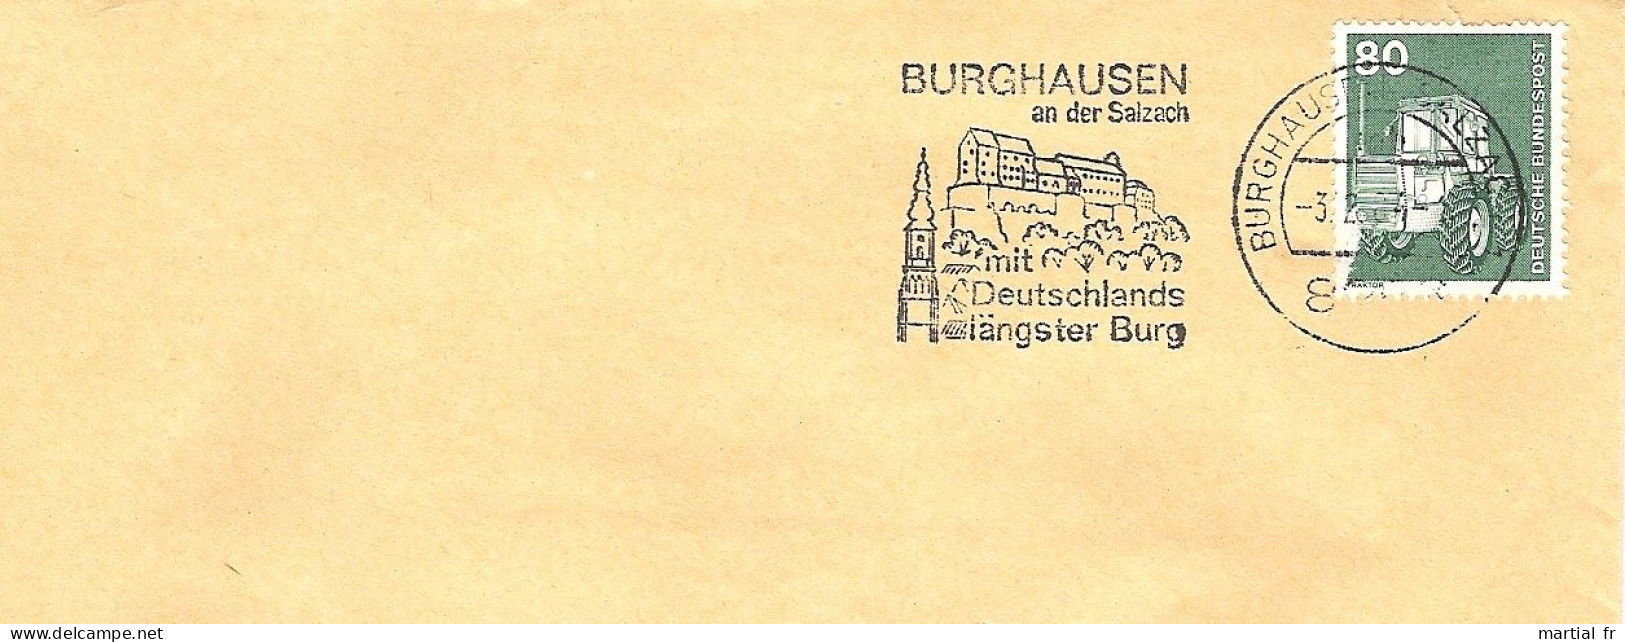 ALLEMAGNE DEUTSCHLAND GERMANY ARCHITECTURE CHATEAU FORT BURG CASTLE SCHLOSS FORTIFICATION Burghausen 8263 SALZACH - Kastelen